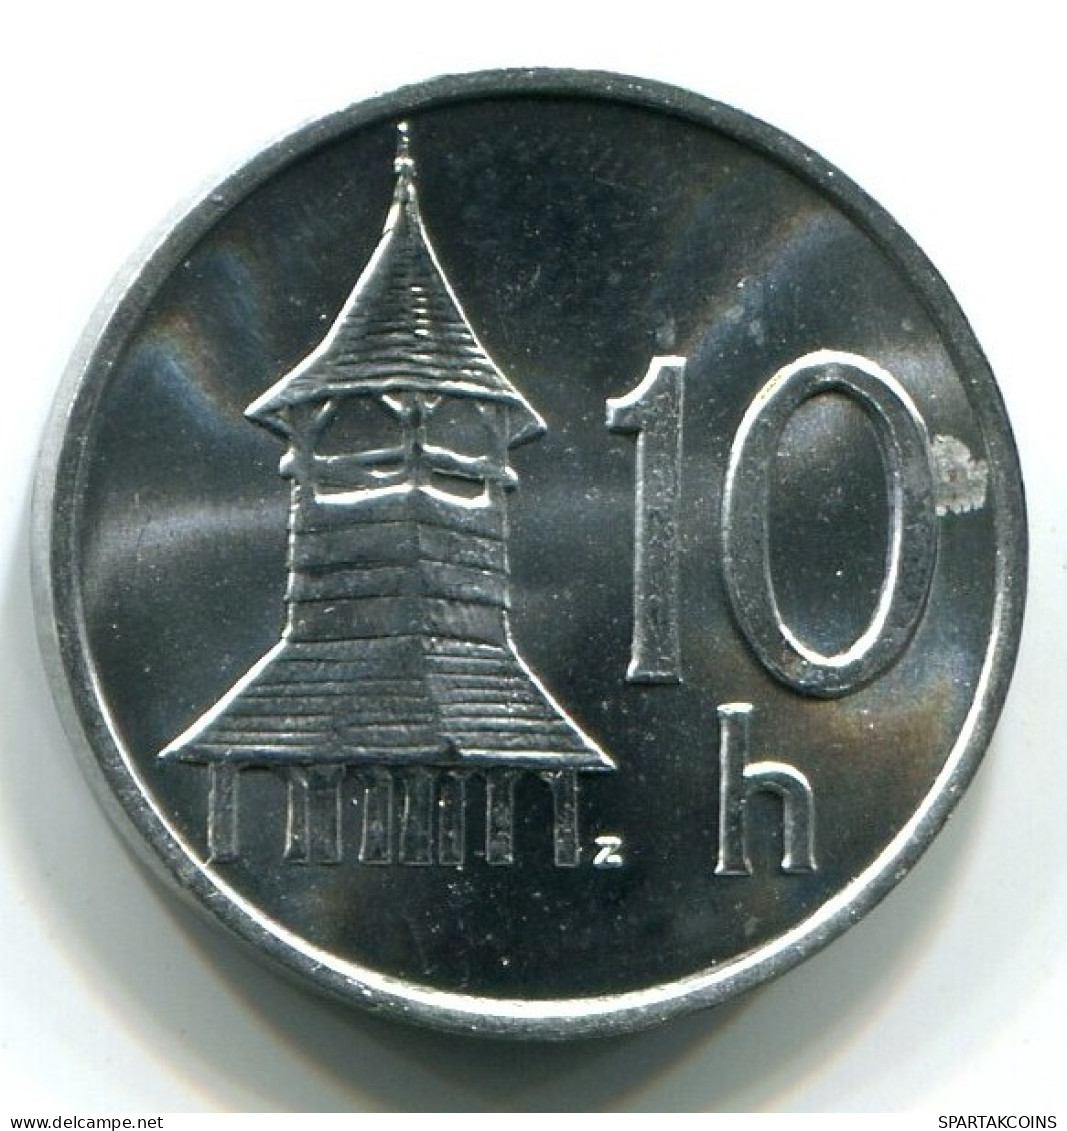 10 HELLERS 1993 SLOVAKIA UNC Coin #W10836.U.A - Slovakia